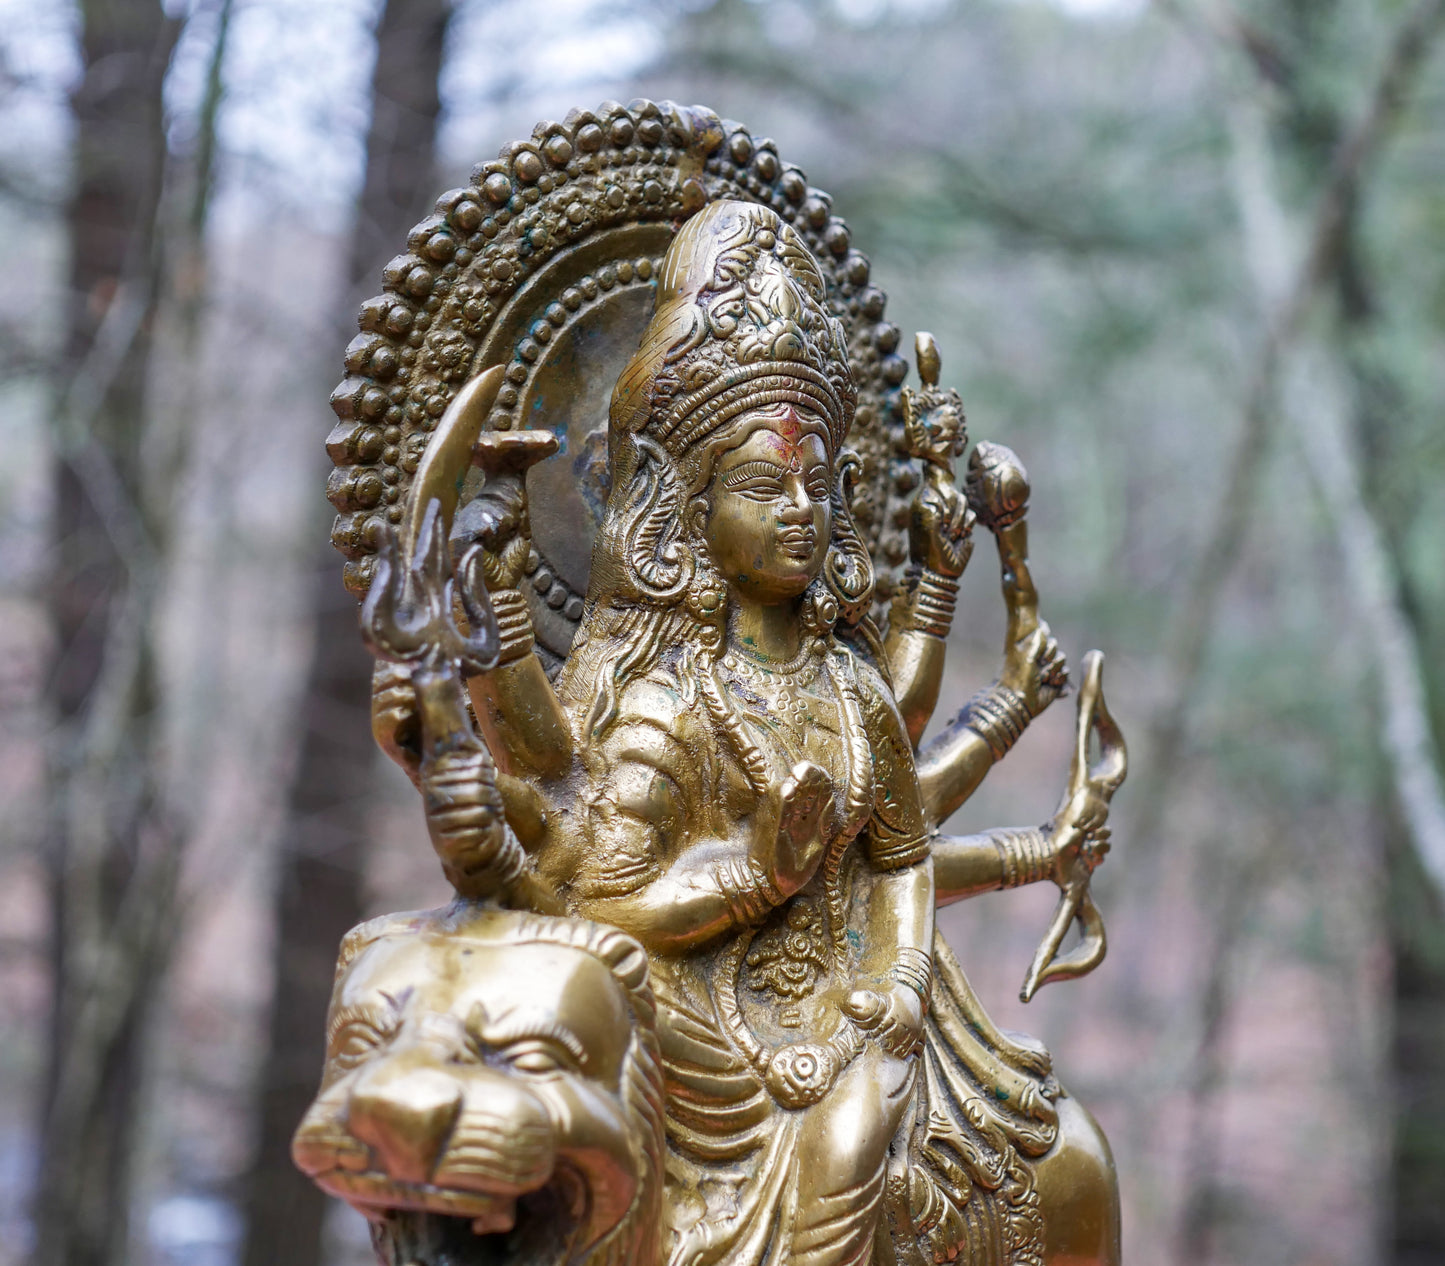 15" Large Durga Statue | Hindu Goddess Maa Durga Temple Vintage Deity Statue Idol